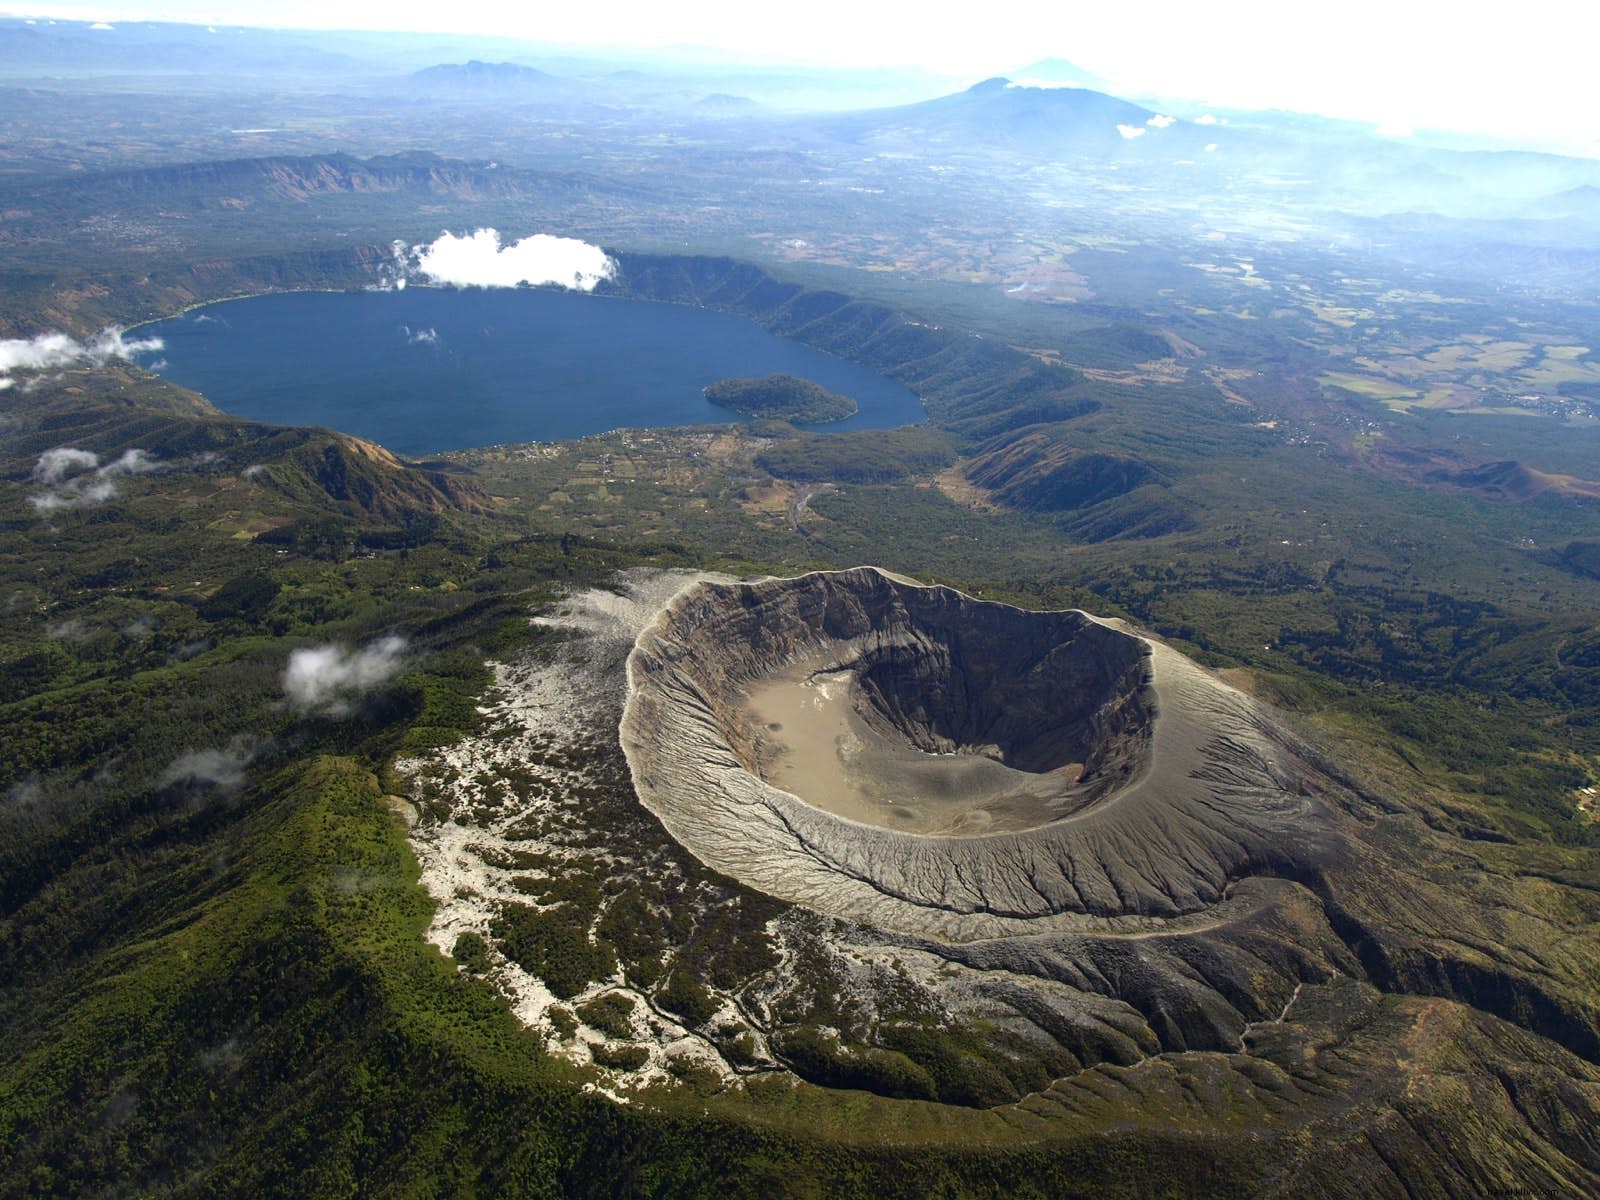 Petualangan gunung berapi paling mendebarkan di Amerika Tengah 